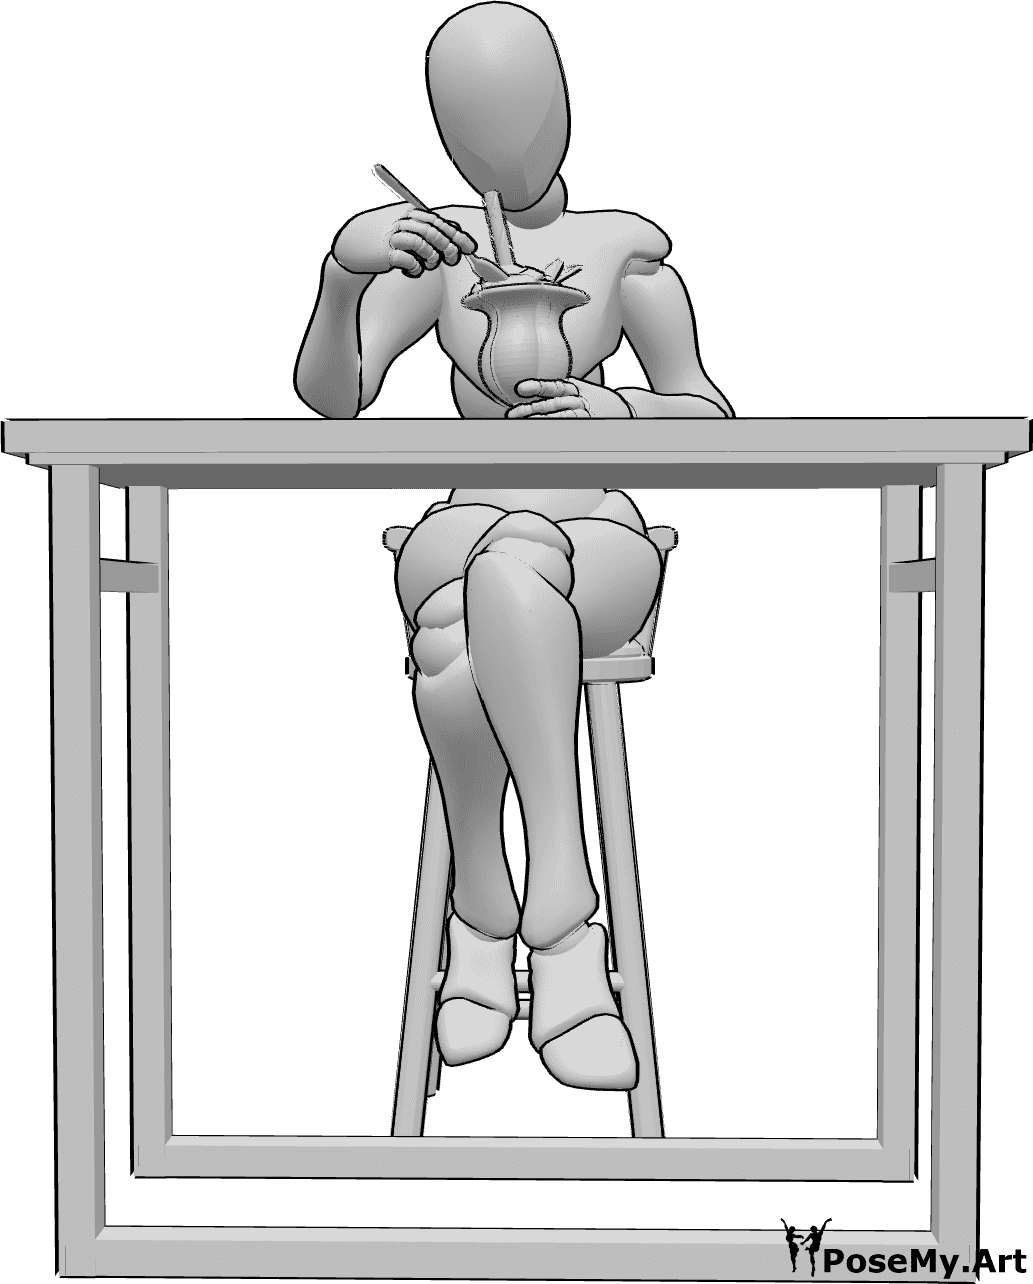 Referencia de poses- Postura para comer helado - Mujer está sentada y comiendo, sosteniendo un helado en una copa de cristal, comiendo helado con una cuchara